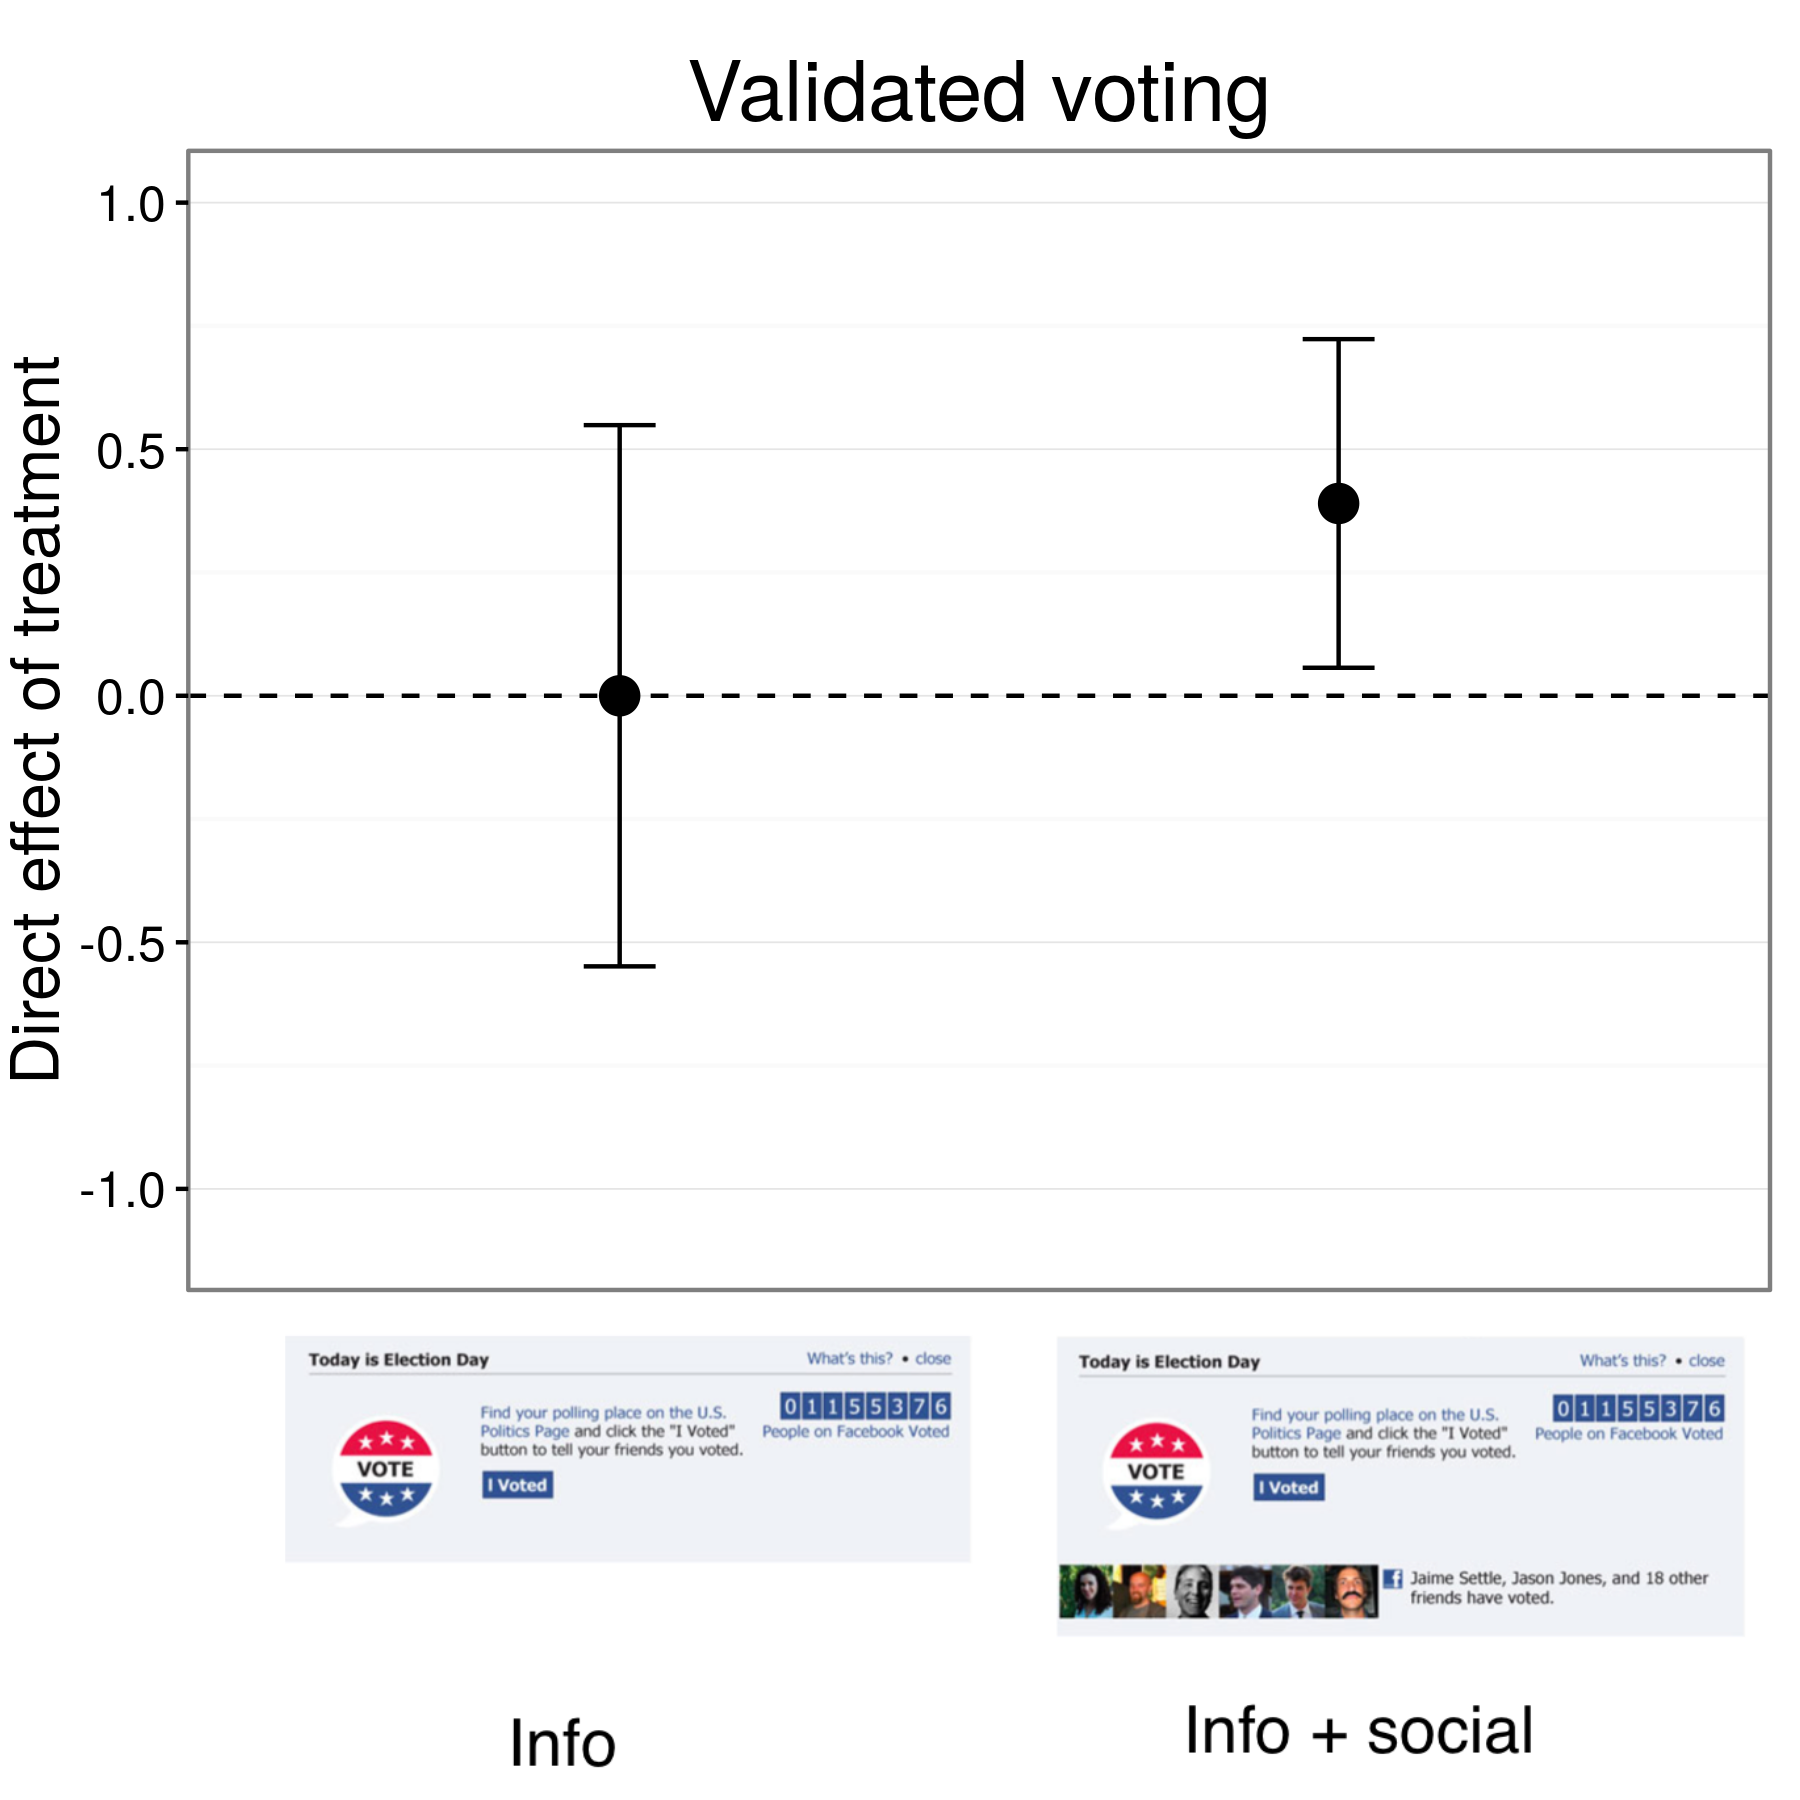 Hình 4.17: Kết quả từ một thử nghiệm get-ra-the-bỏ phiếu trên Facebook (Bond et al 2012.). Những người tham gia trong nhóm thông tin bình chọn ở mức tương tự như những người ở trong tình trạng kiểm soát, nhưng người dân trong thông tin + nhóm xã hội bình chọn với tốc độ cao hơn một chút. Bars đại diện cho ước tính khoảng tin cậy 95%. Kết quả trong đồ thị bao gồm khoảng 6 triệu người tham gia cho người nghiên cứu có thể phù hợp với hồ sơ bầu cử.